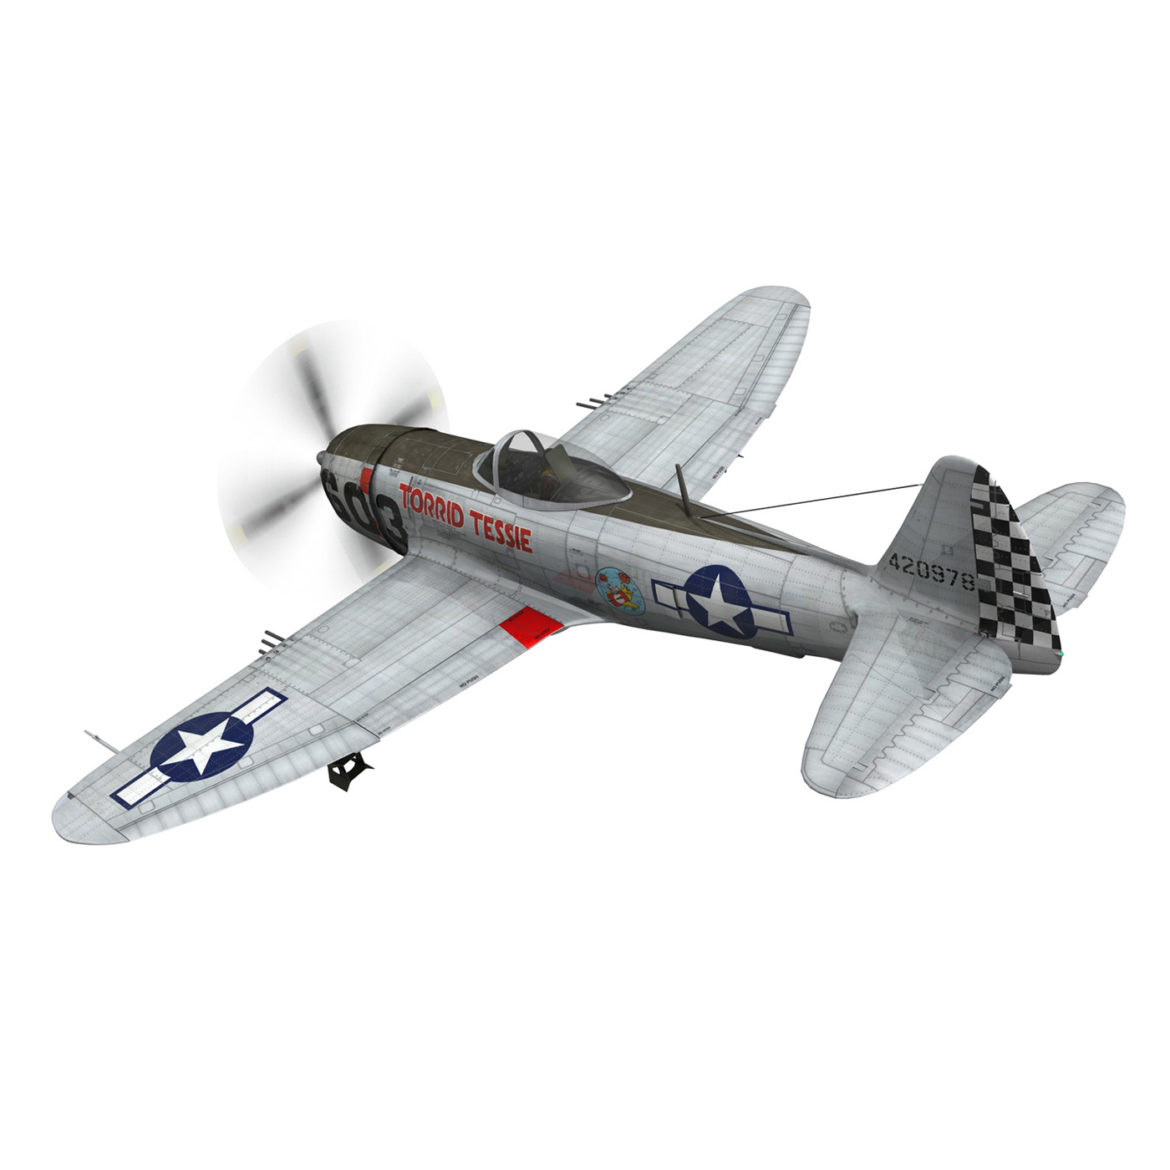 republic p-47d thunderbolt – torrid tessie 3d model 3ds c4d lwo lw lws obj fbx 303866